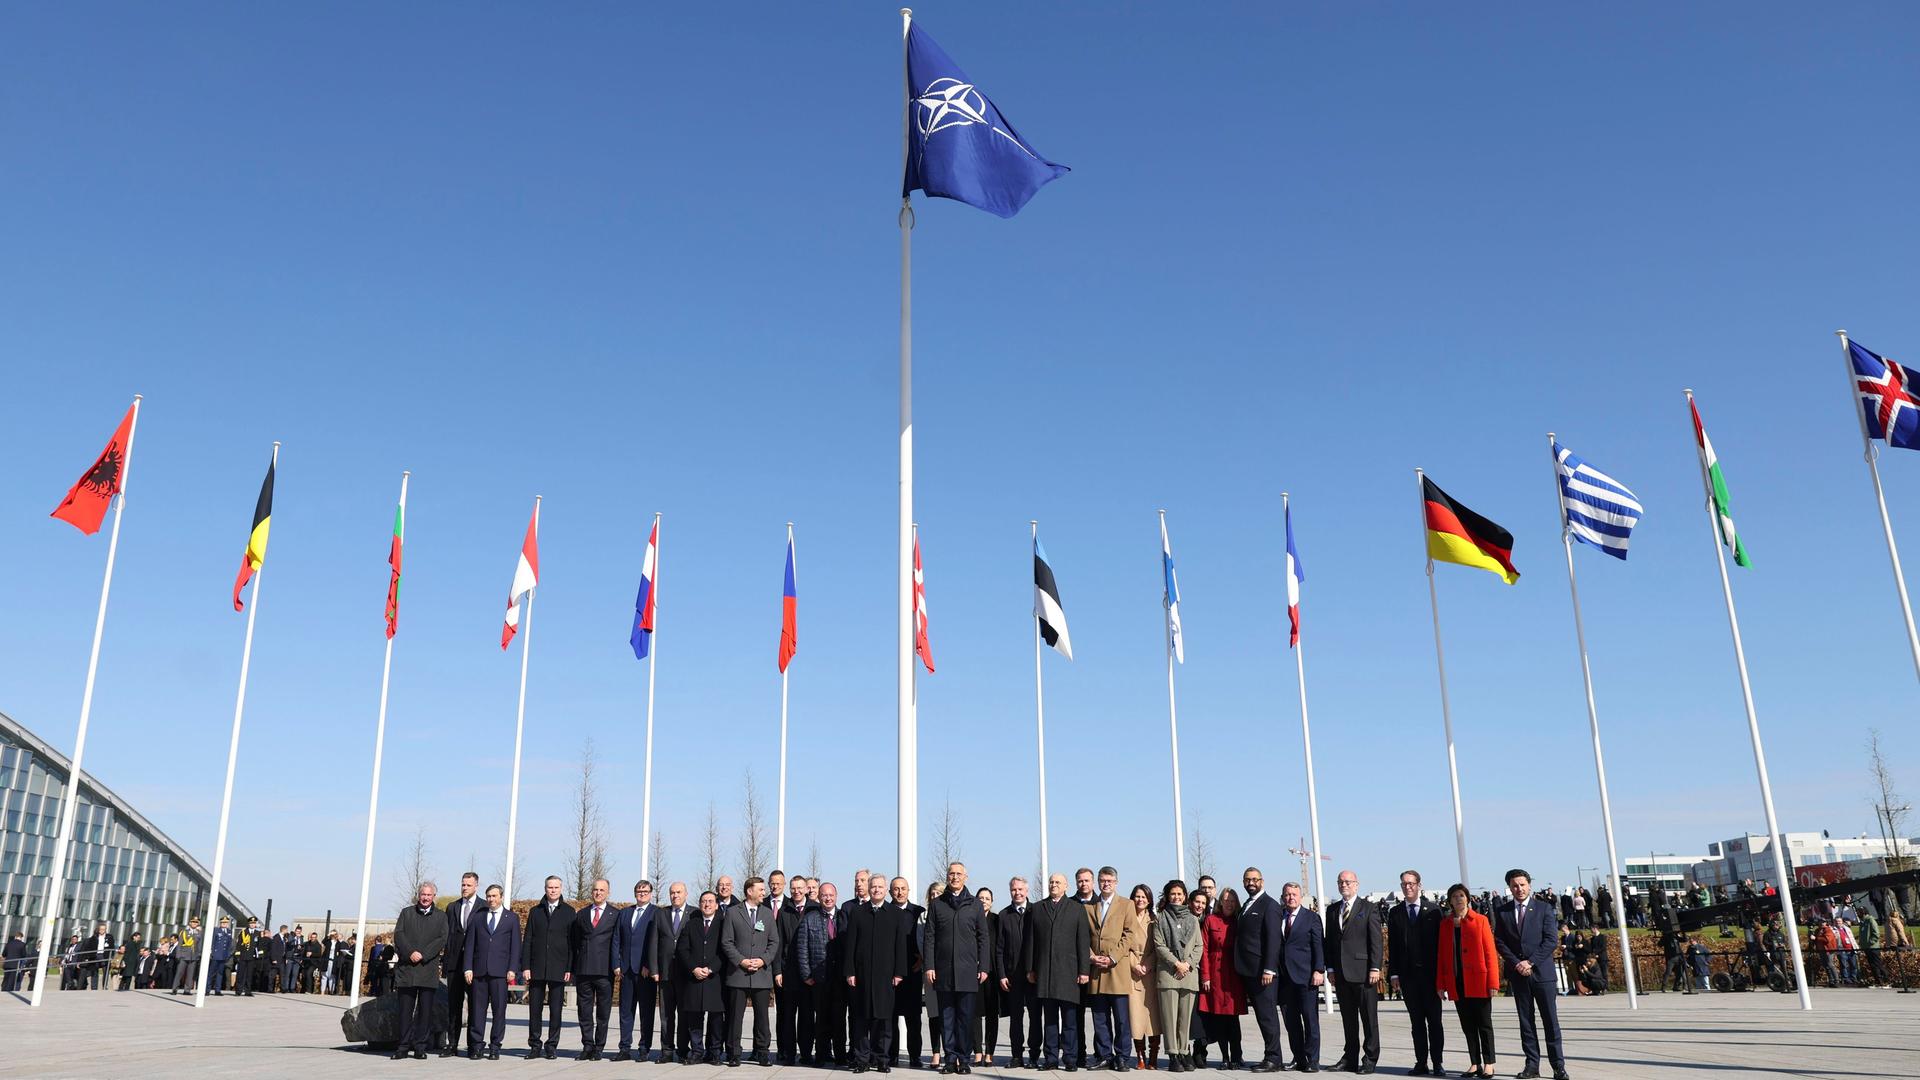 本部での外相会議の傍観式でフィンランドの国旗が掲げられた後、NATOの外相は加盟国の旗の前で写真を撮るために集まります。